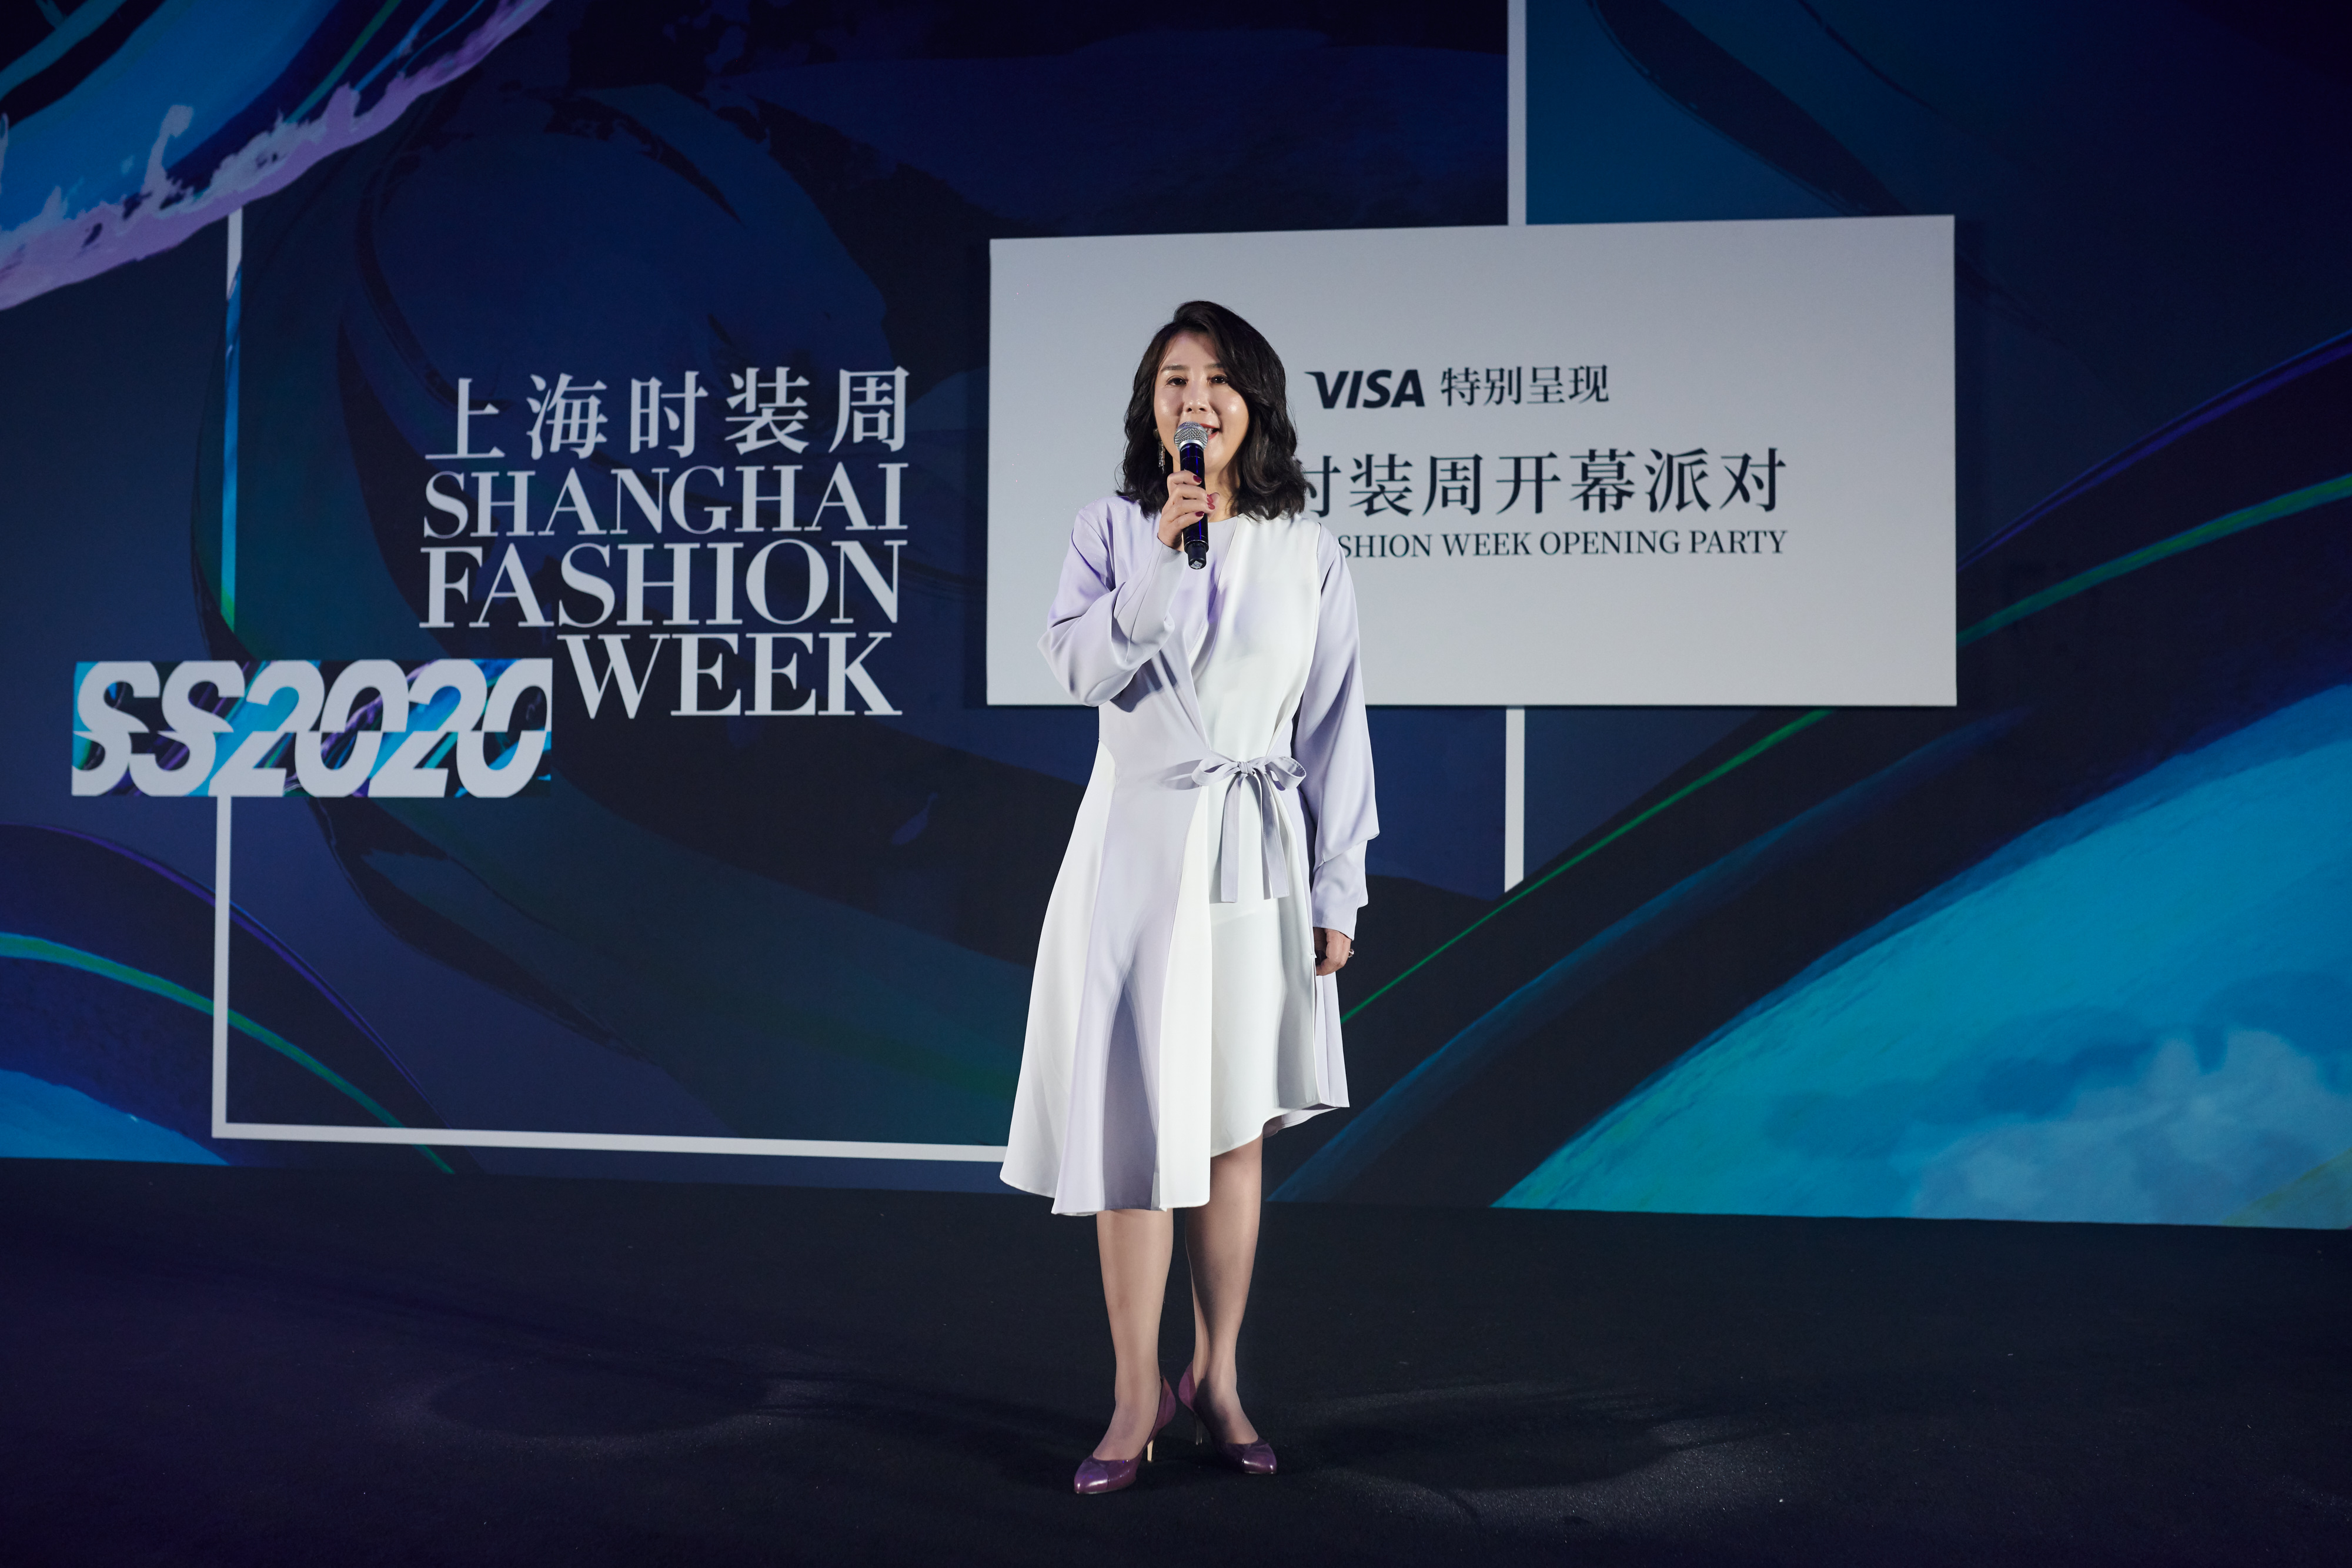 携手新锐设计师郭一然天   Visa时尚狂欢夜点燃2020春夏上海时装周